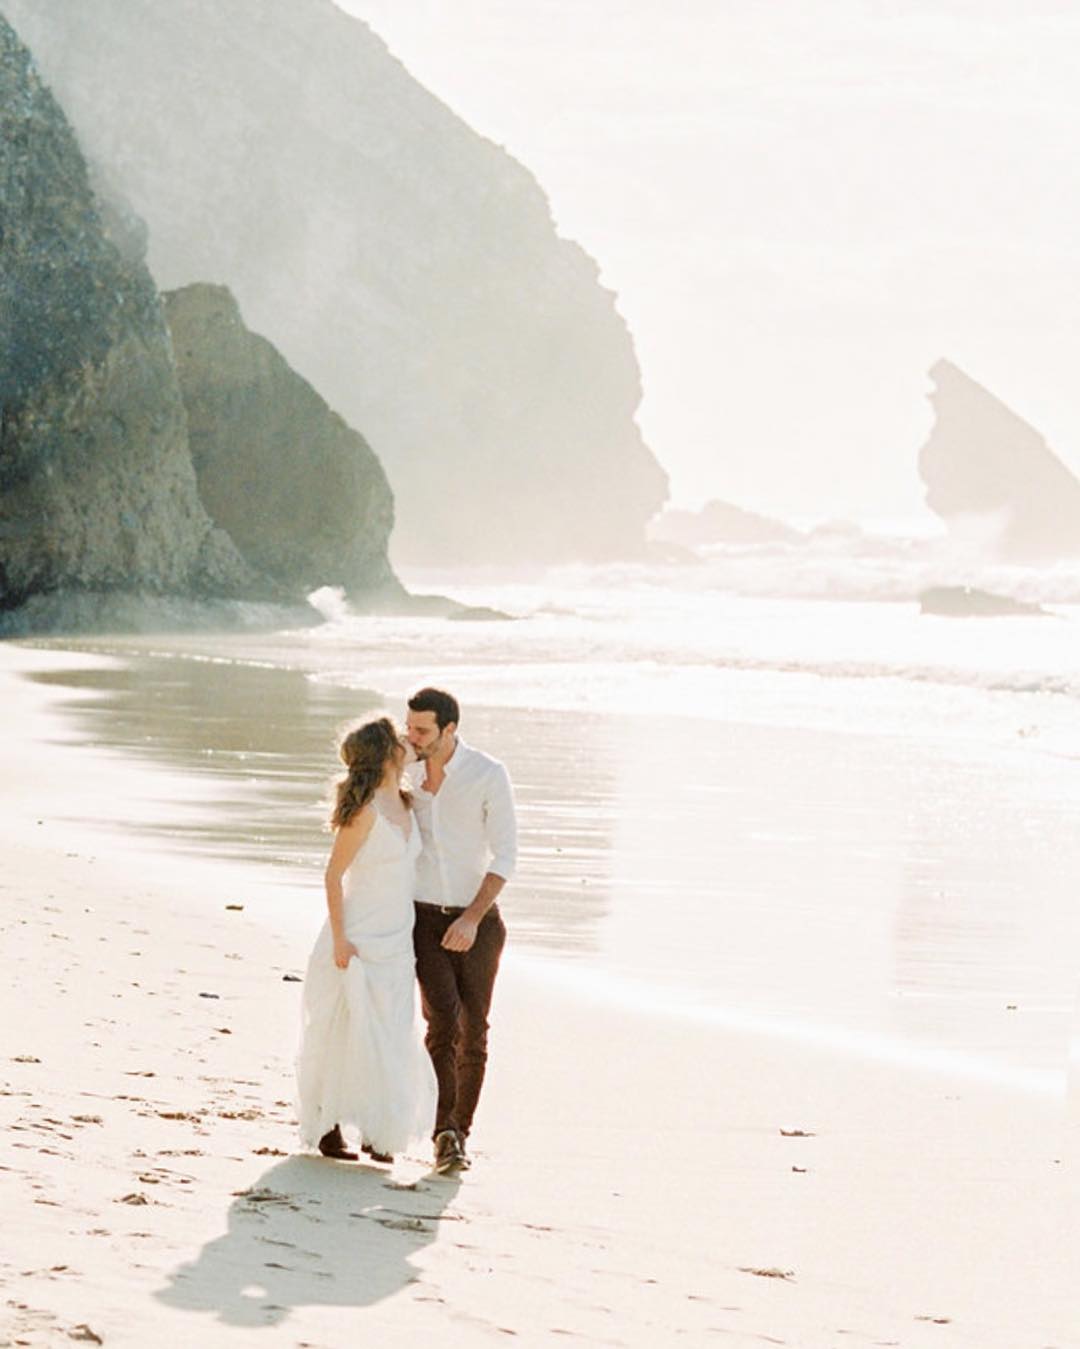 outdoor wedding photos kiss on the beach mymagicdreams